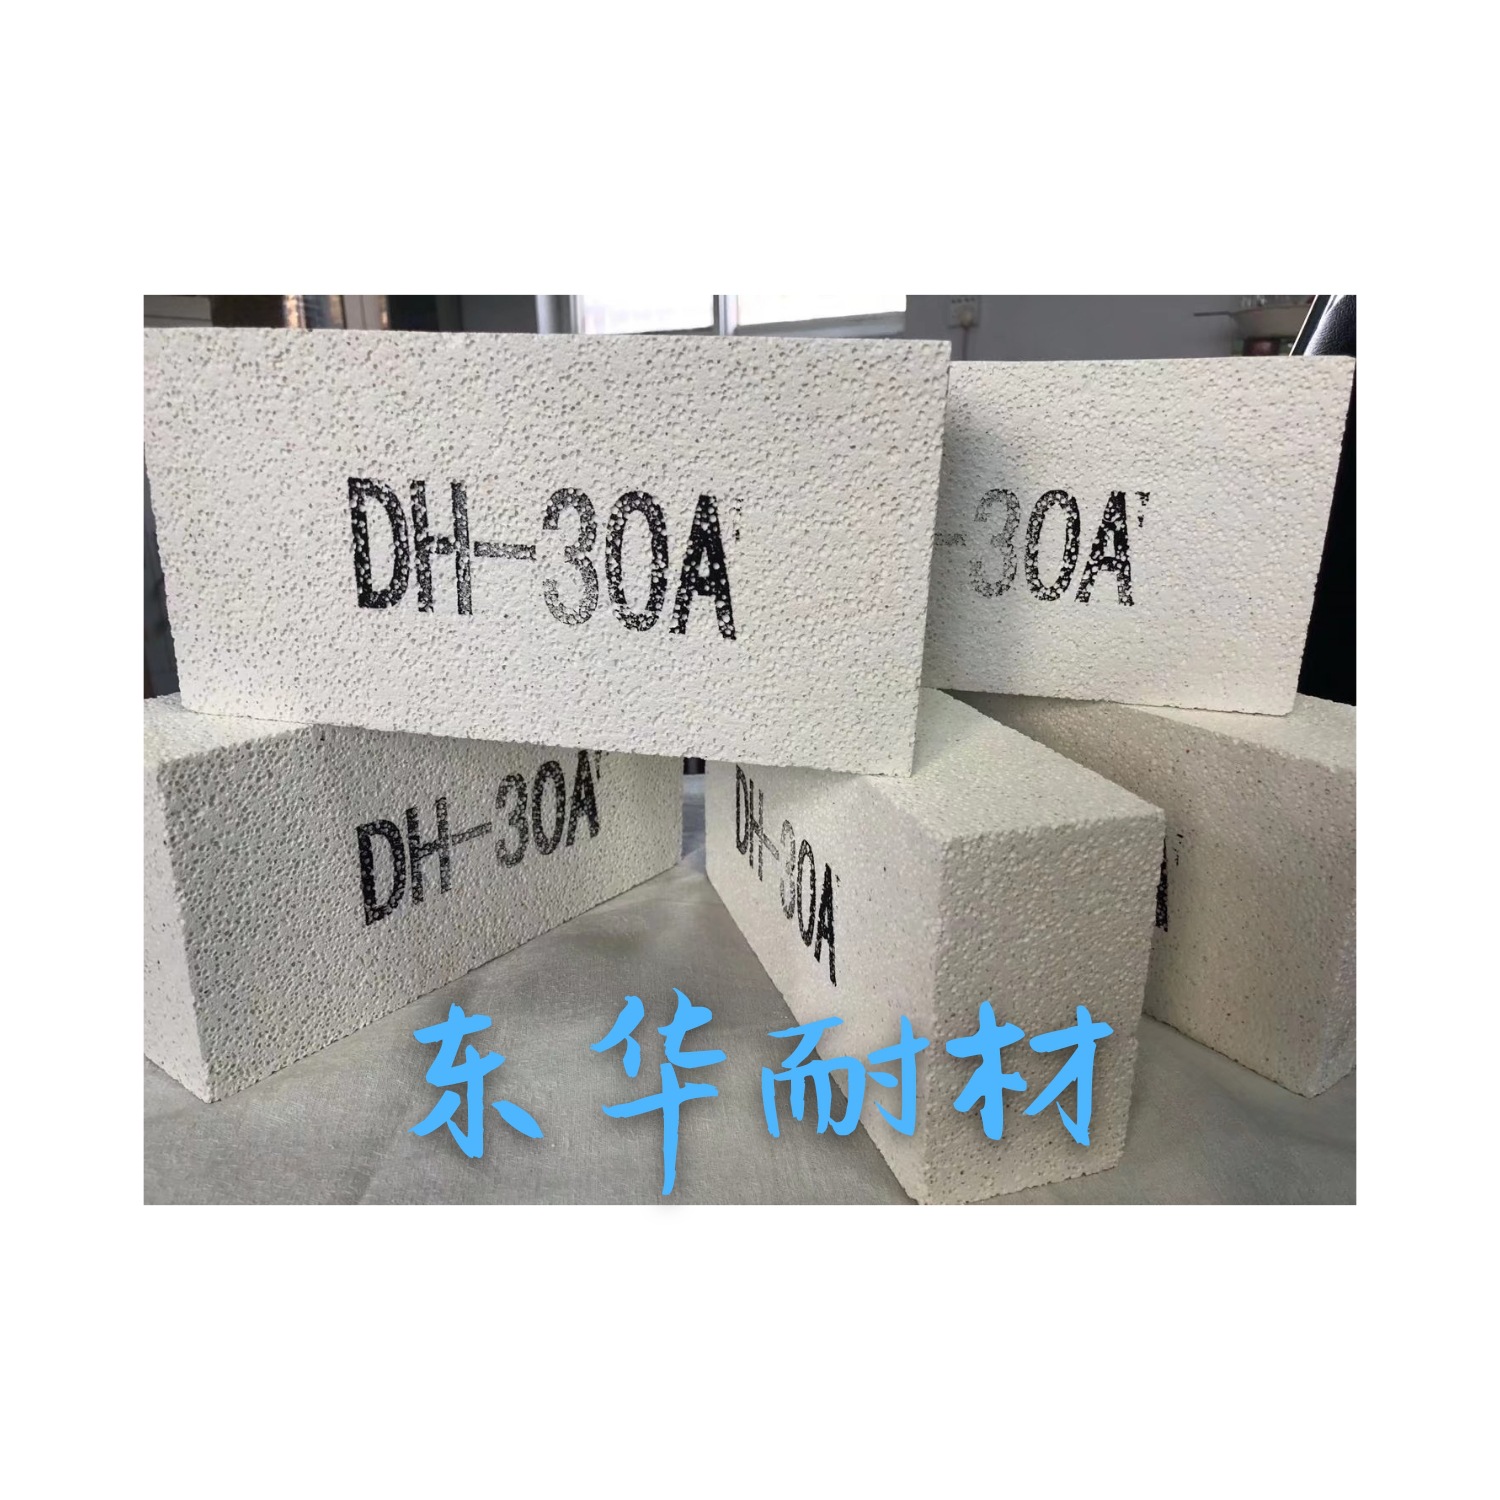 出口莫来石标砖30A 耐火材料 耐高温 河南耐火材料厂家专业出售